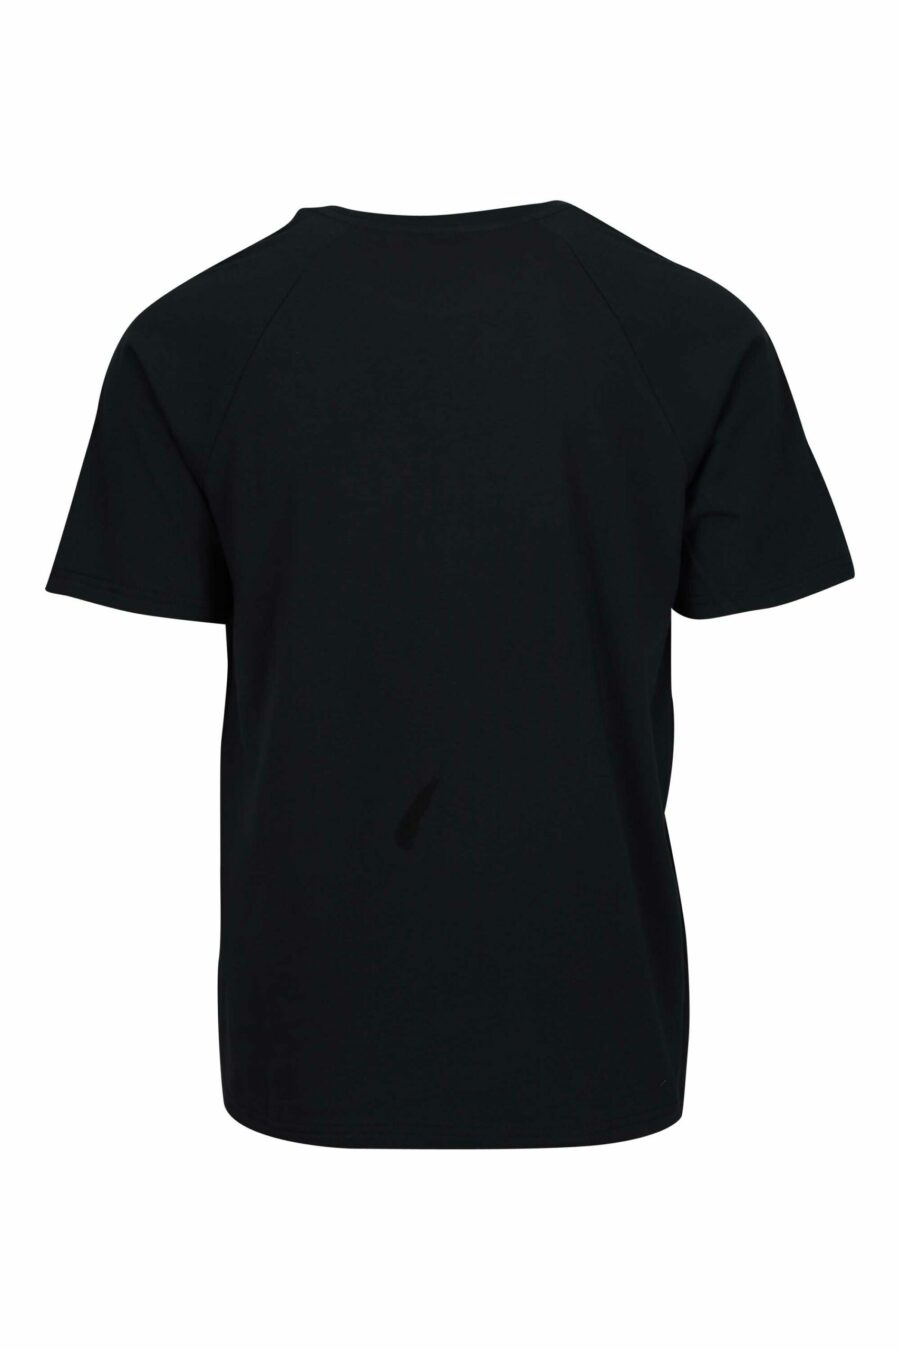 Camiseta negra con logo oso "underbear" en cinta hombros - 667113602356 1 scaled